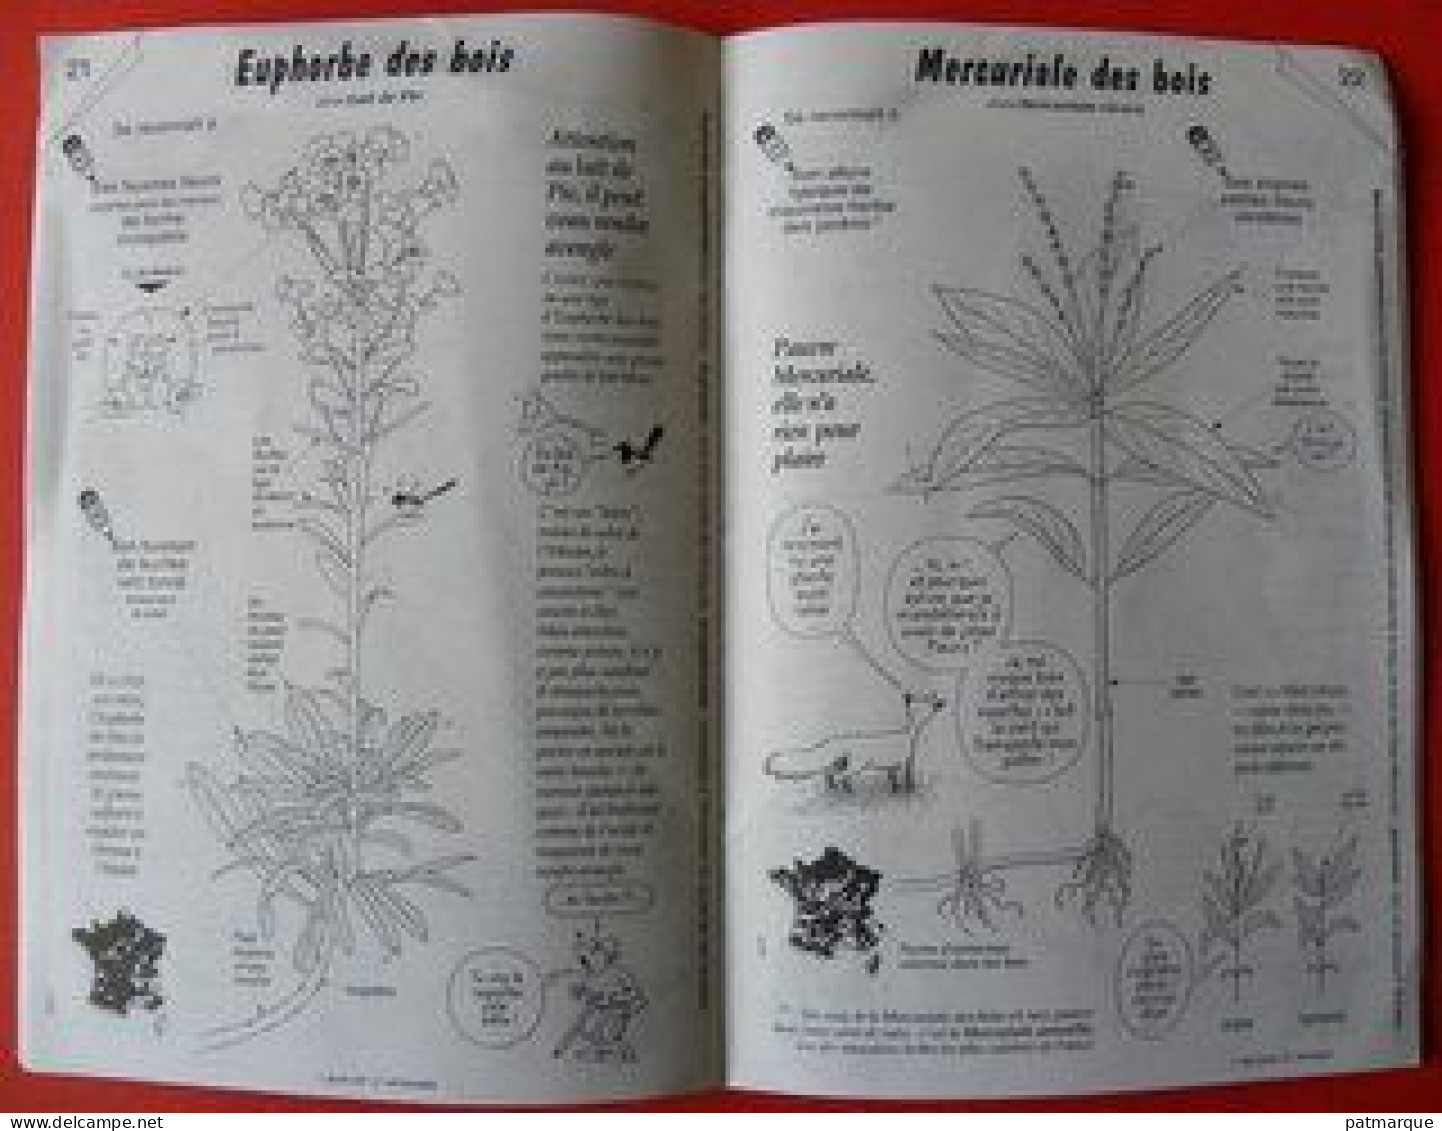 La Hulotte - Le Petit Guide Des Fleurs Des Bois - Jardinage